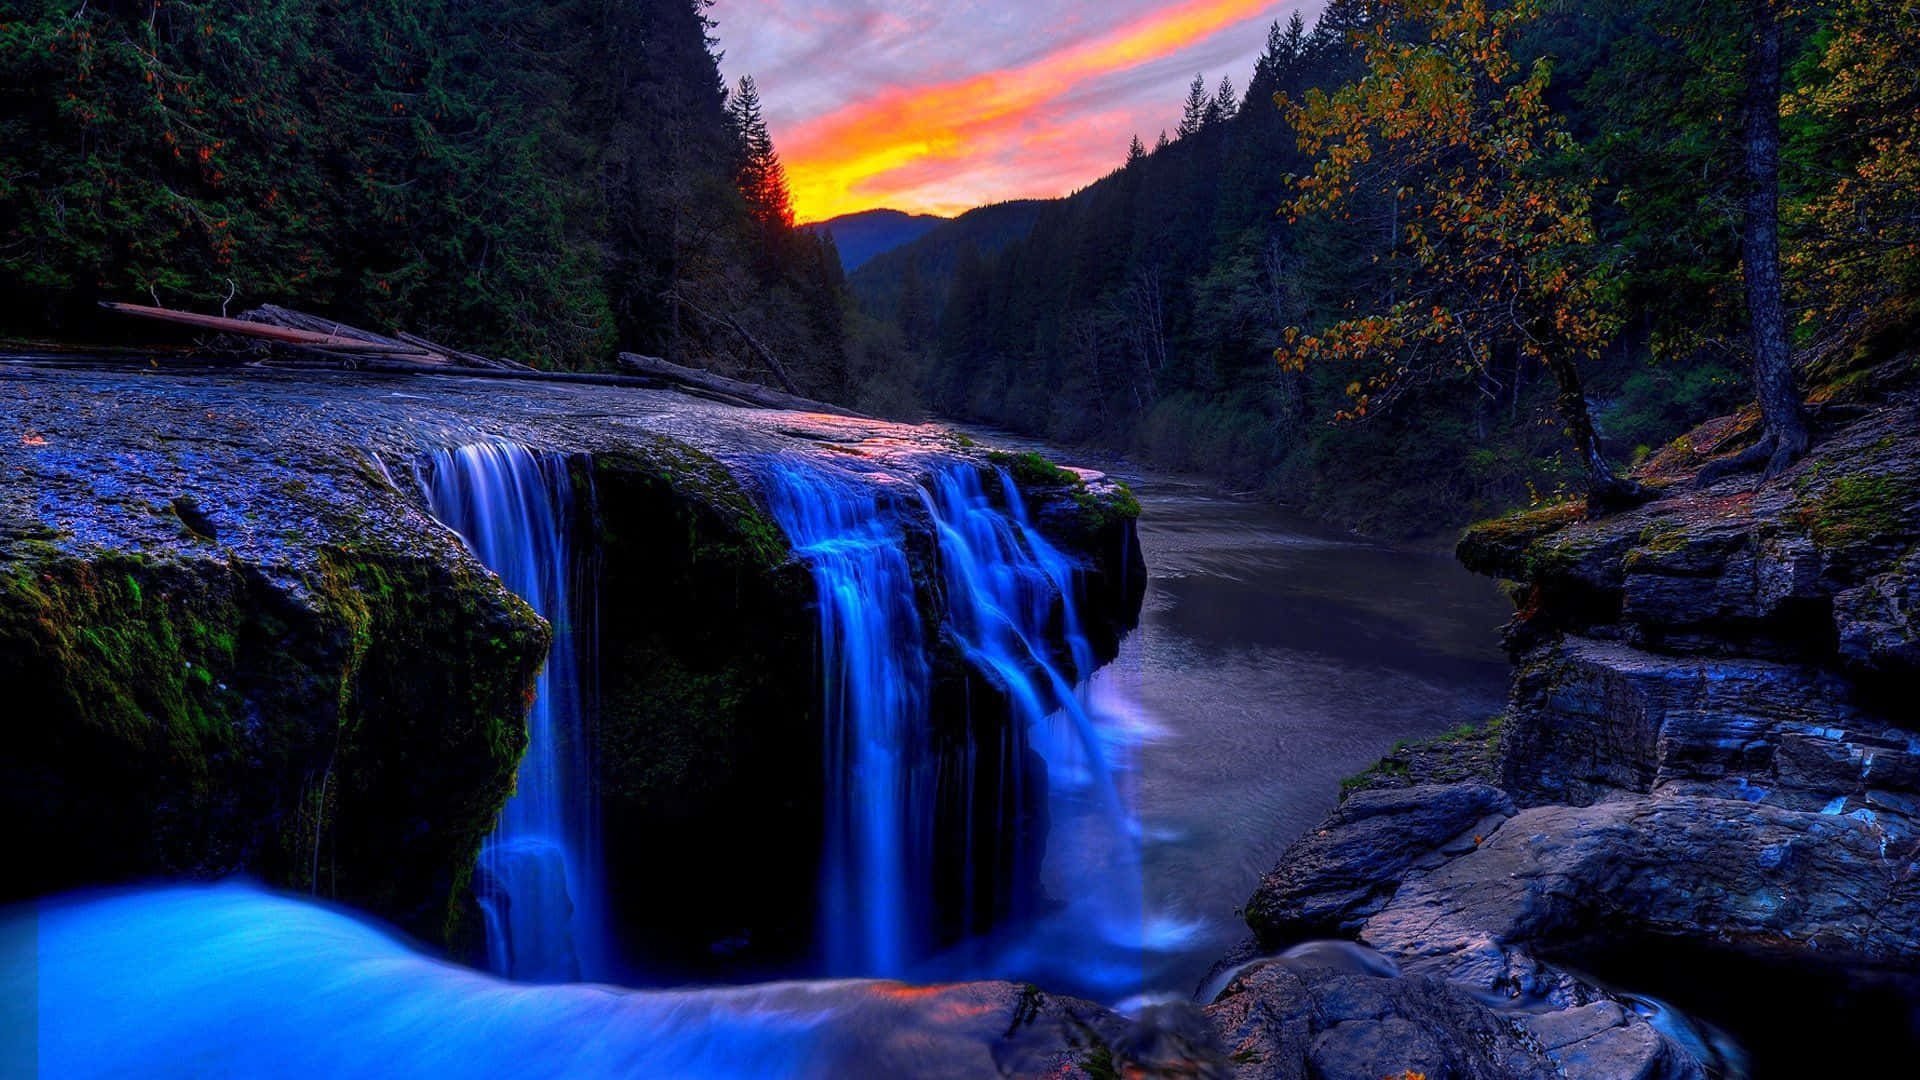 Kannamangalamreserve Forest Wasserfall Desktop Wallpaper